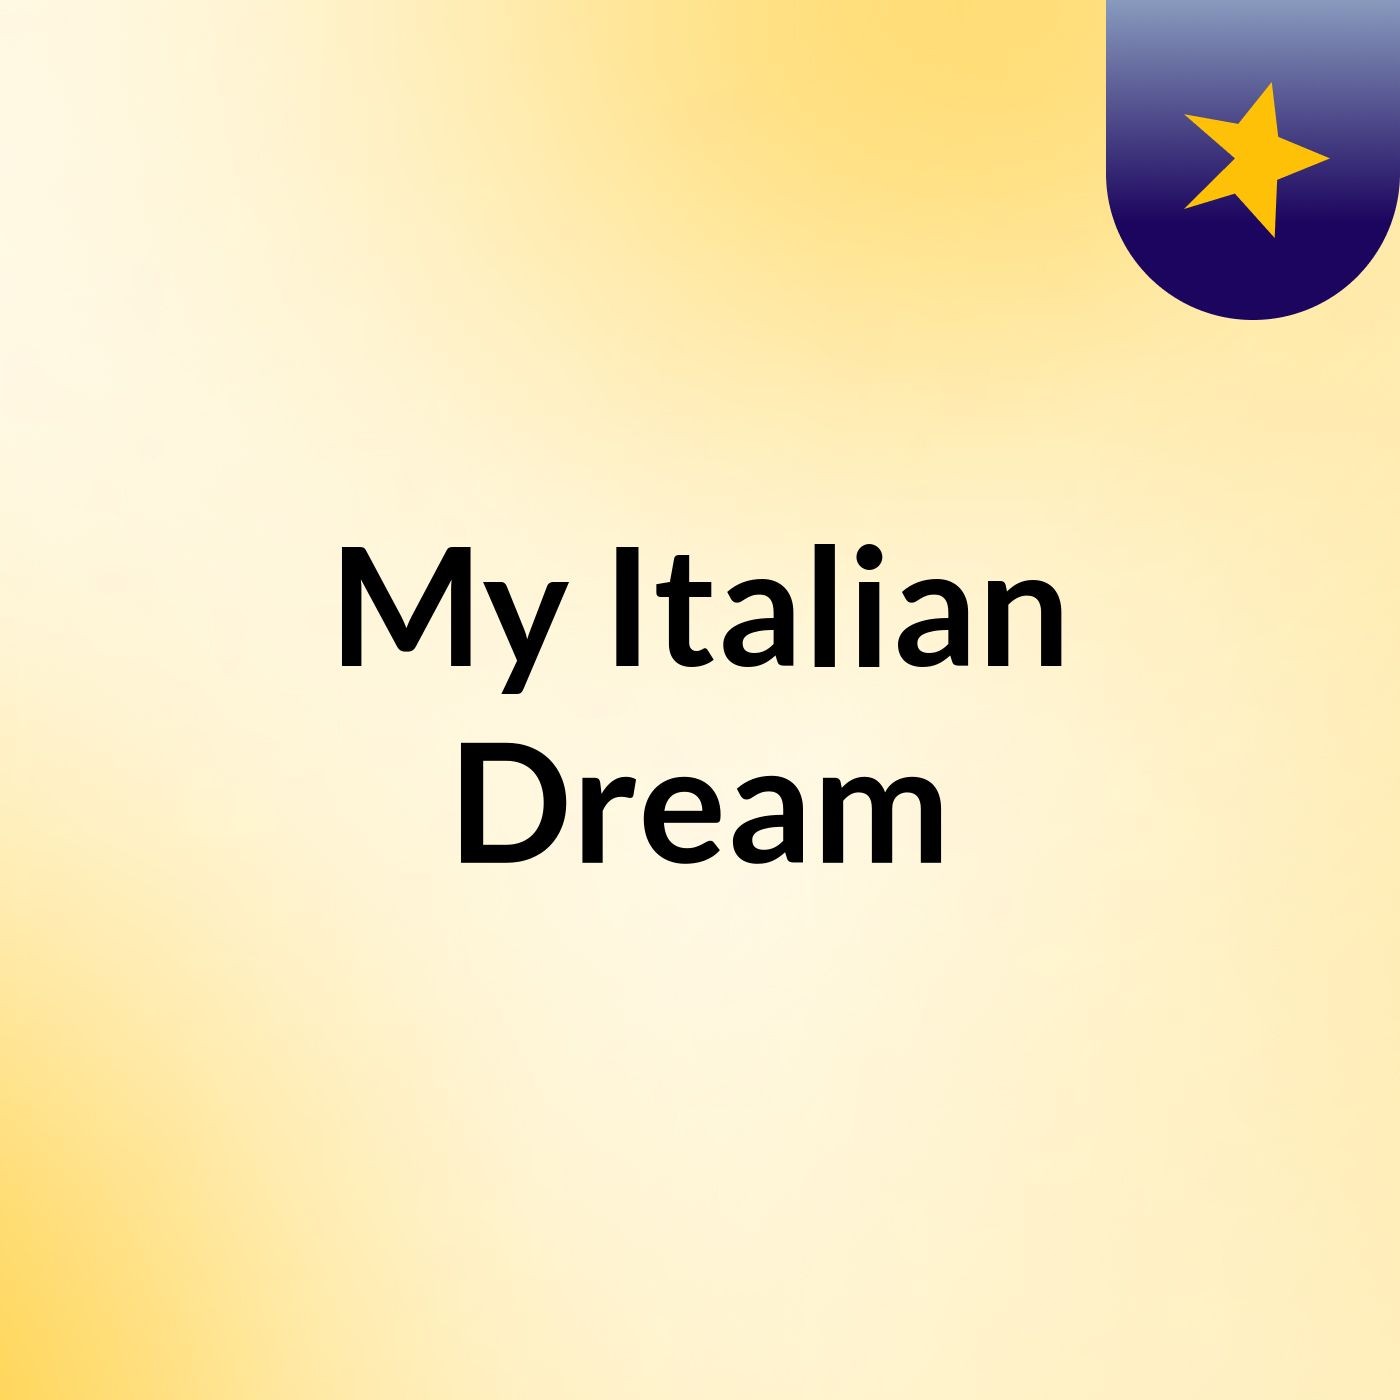 My Italian Dream